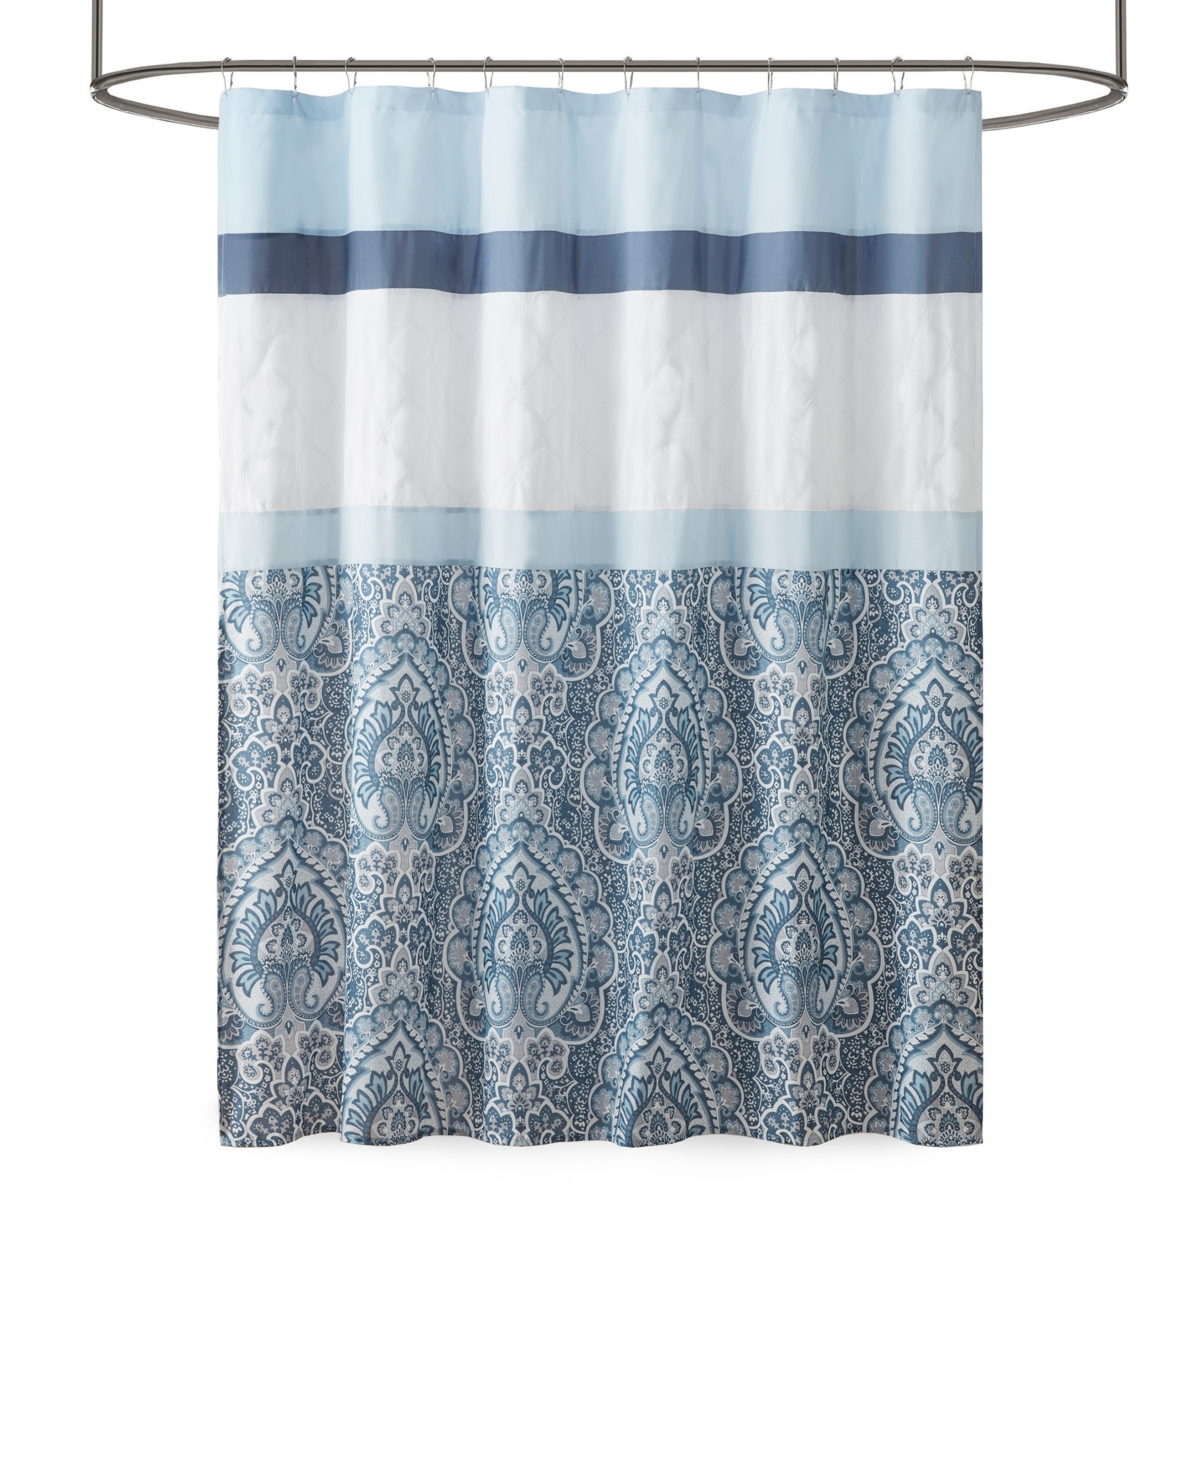 510 Design Shawnee Embroidered Shower Curtain, 72 x 72 Bedding